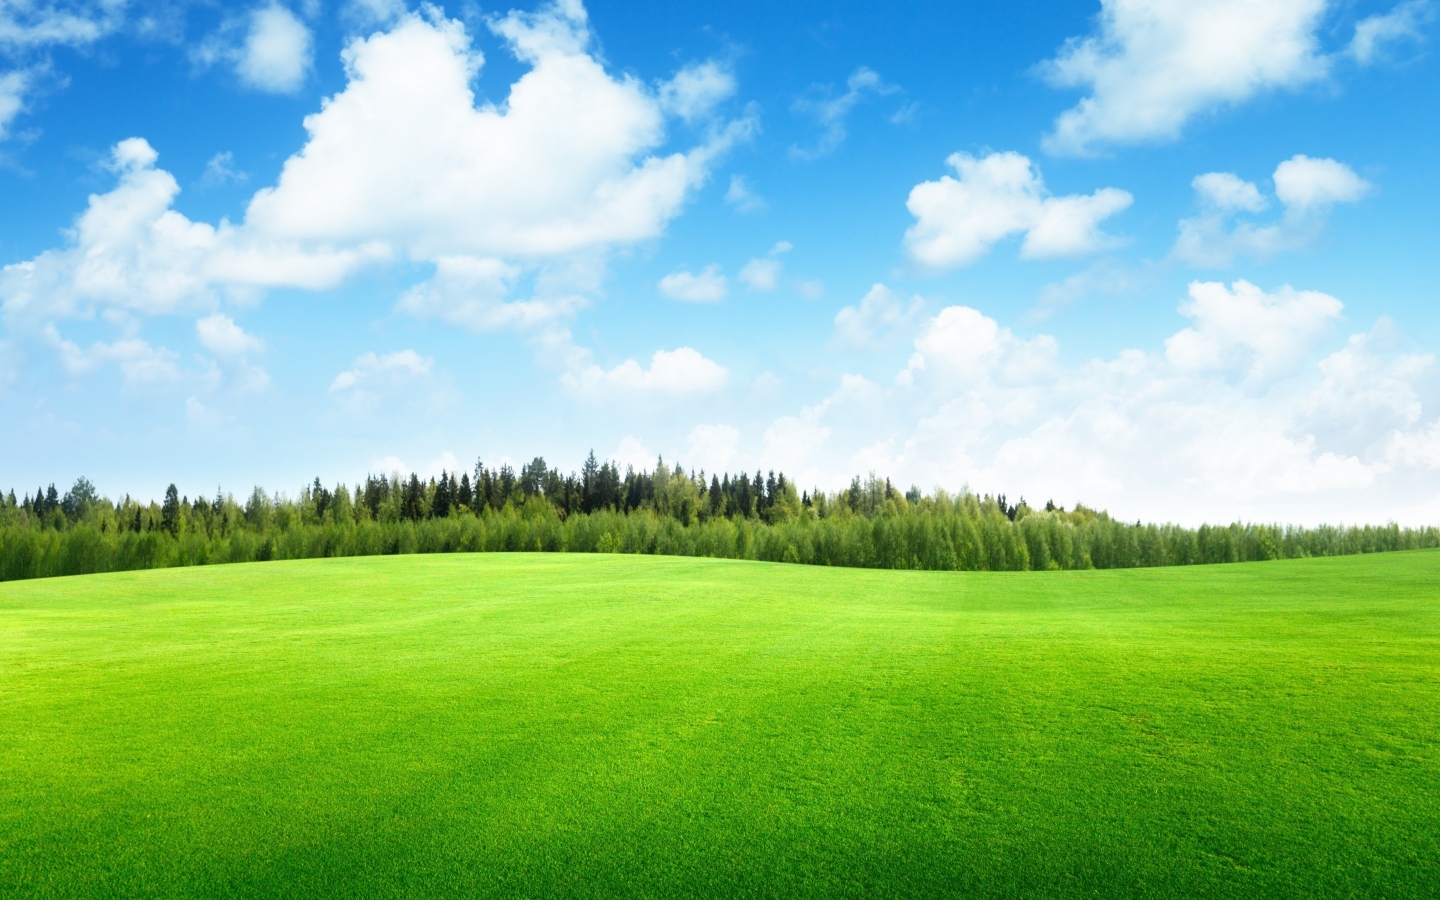 Beaufitul Green Grass Field for 1440 x 900 widescreen resolution